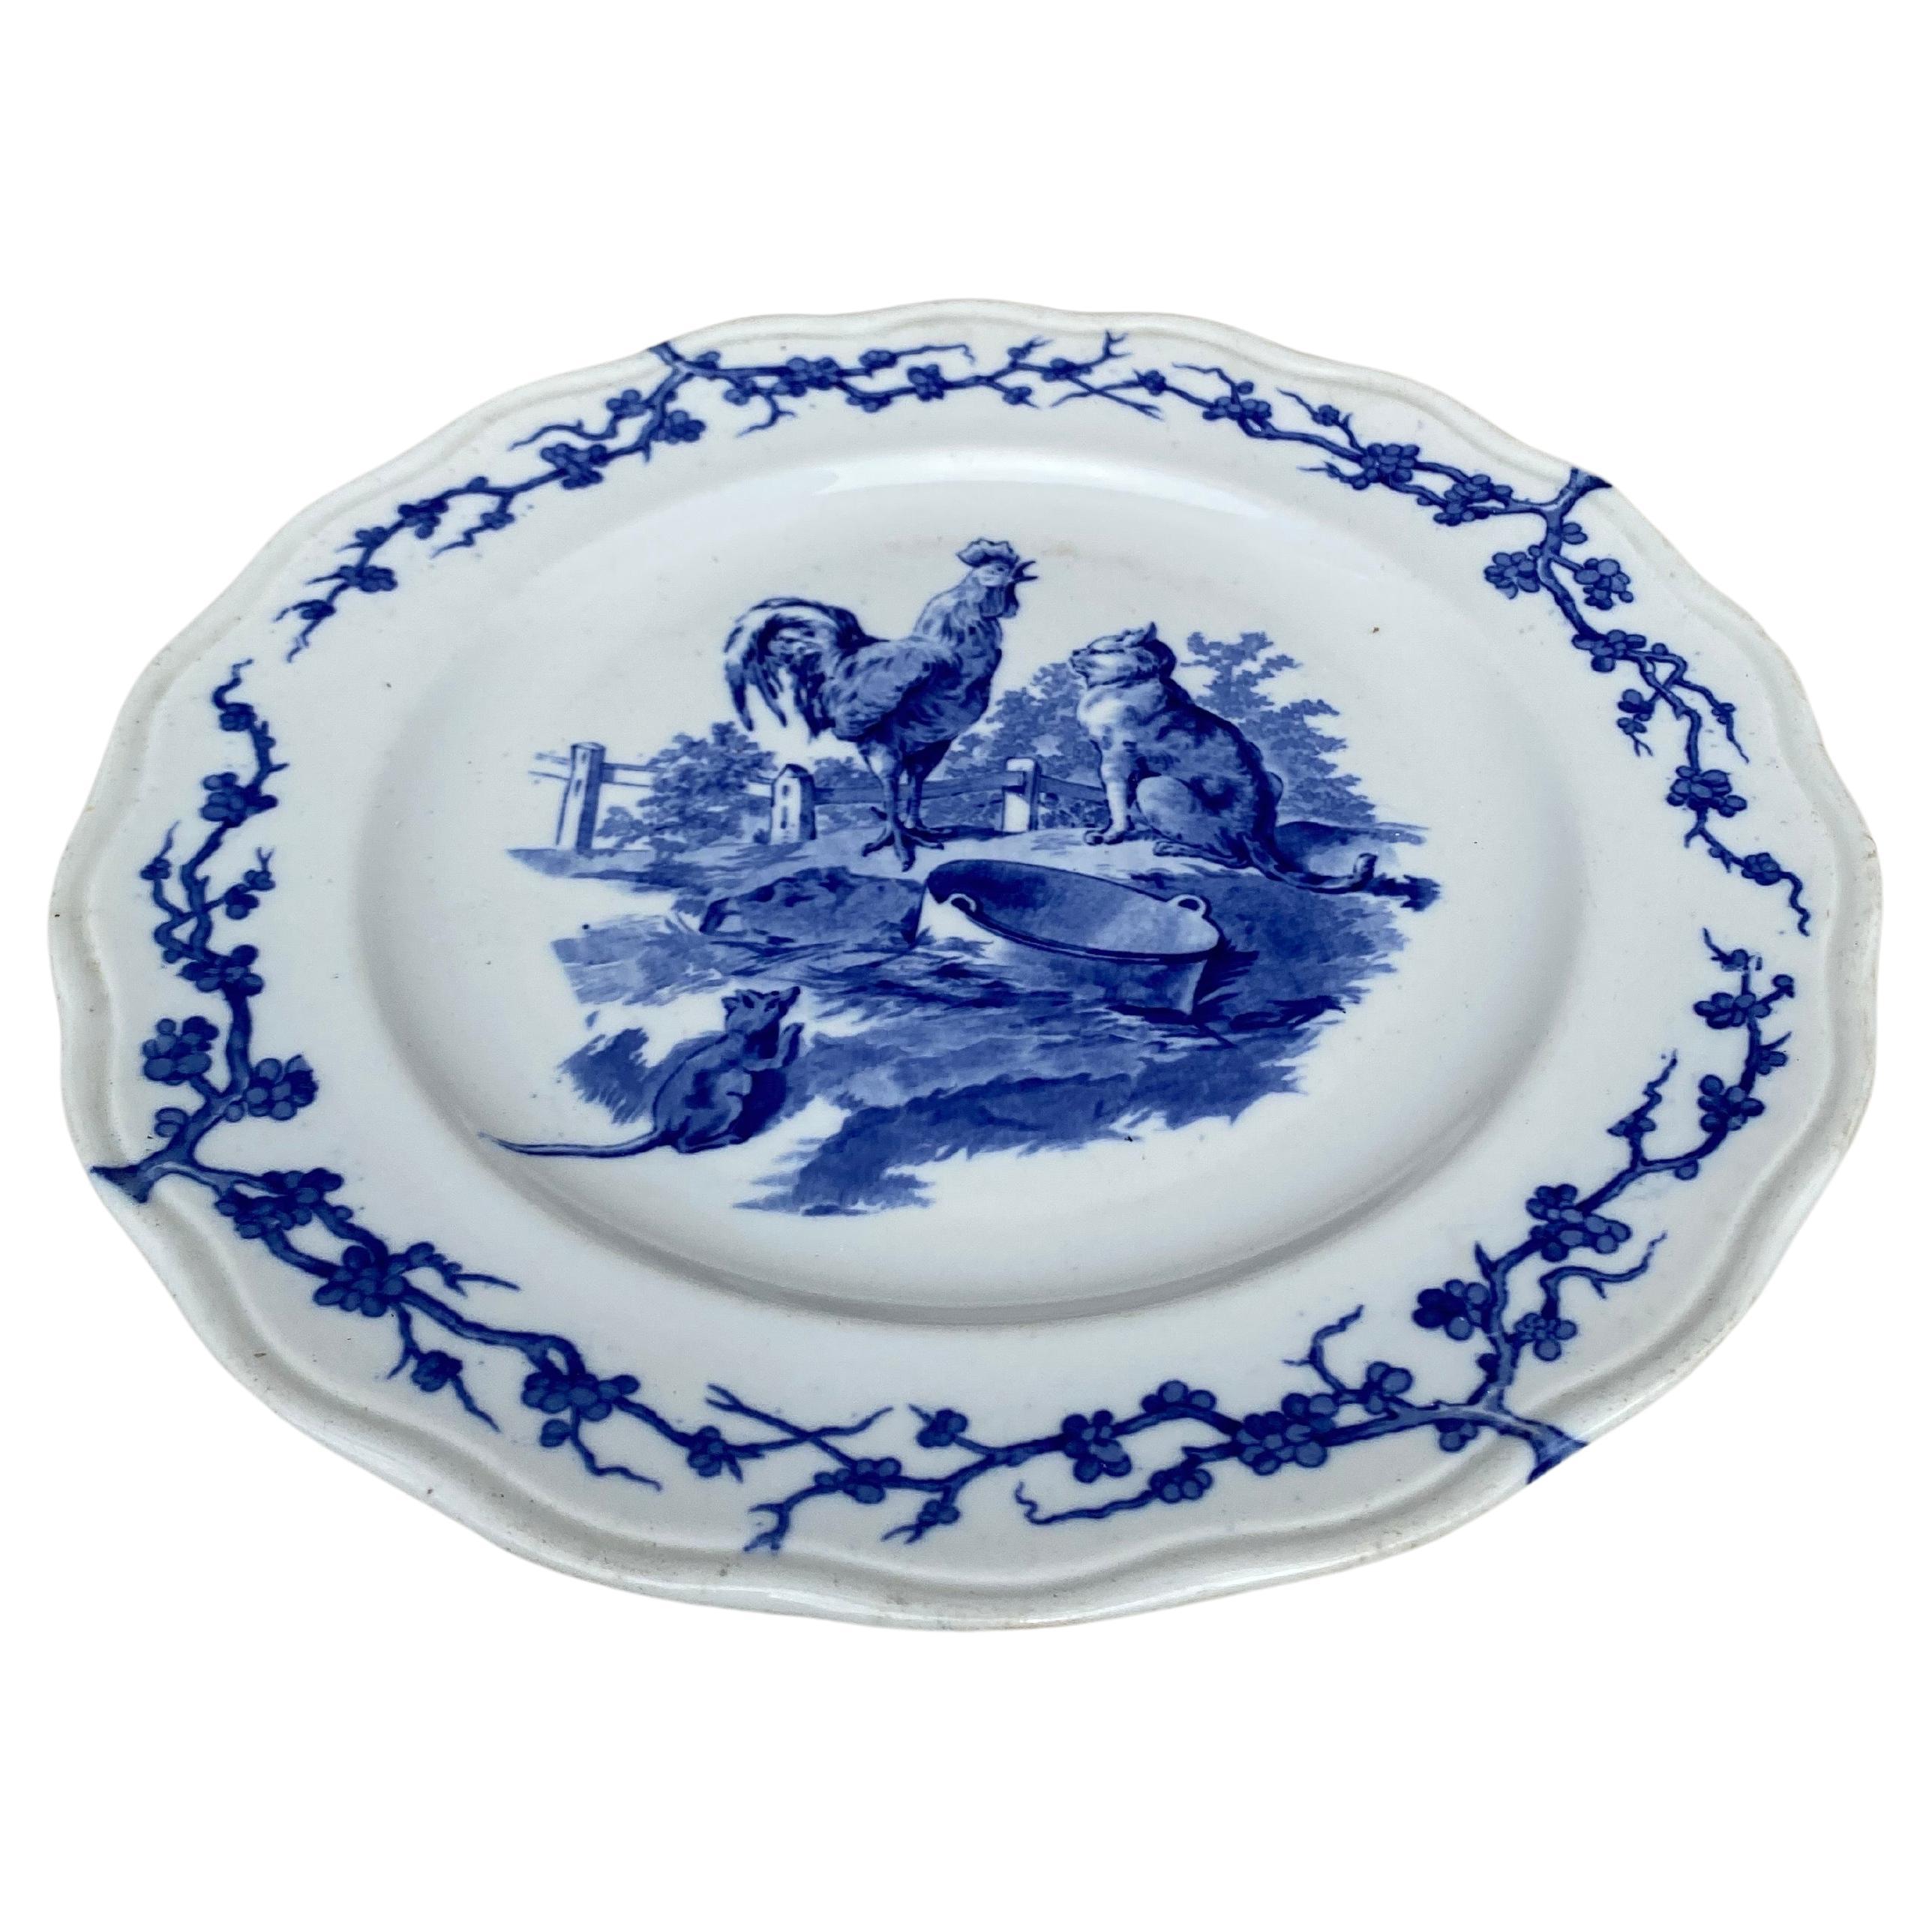 Assiette anglaise bleu et blanc coq et chat Brown Westhead and Moore, vers 1890.
A été vendu au Grand Dépôt 21 rue Drouot Paris.
Fontaine / Fables d'Ésope
Marque de Losange en anglais.